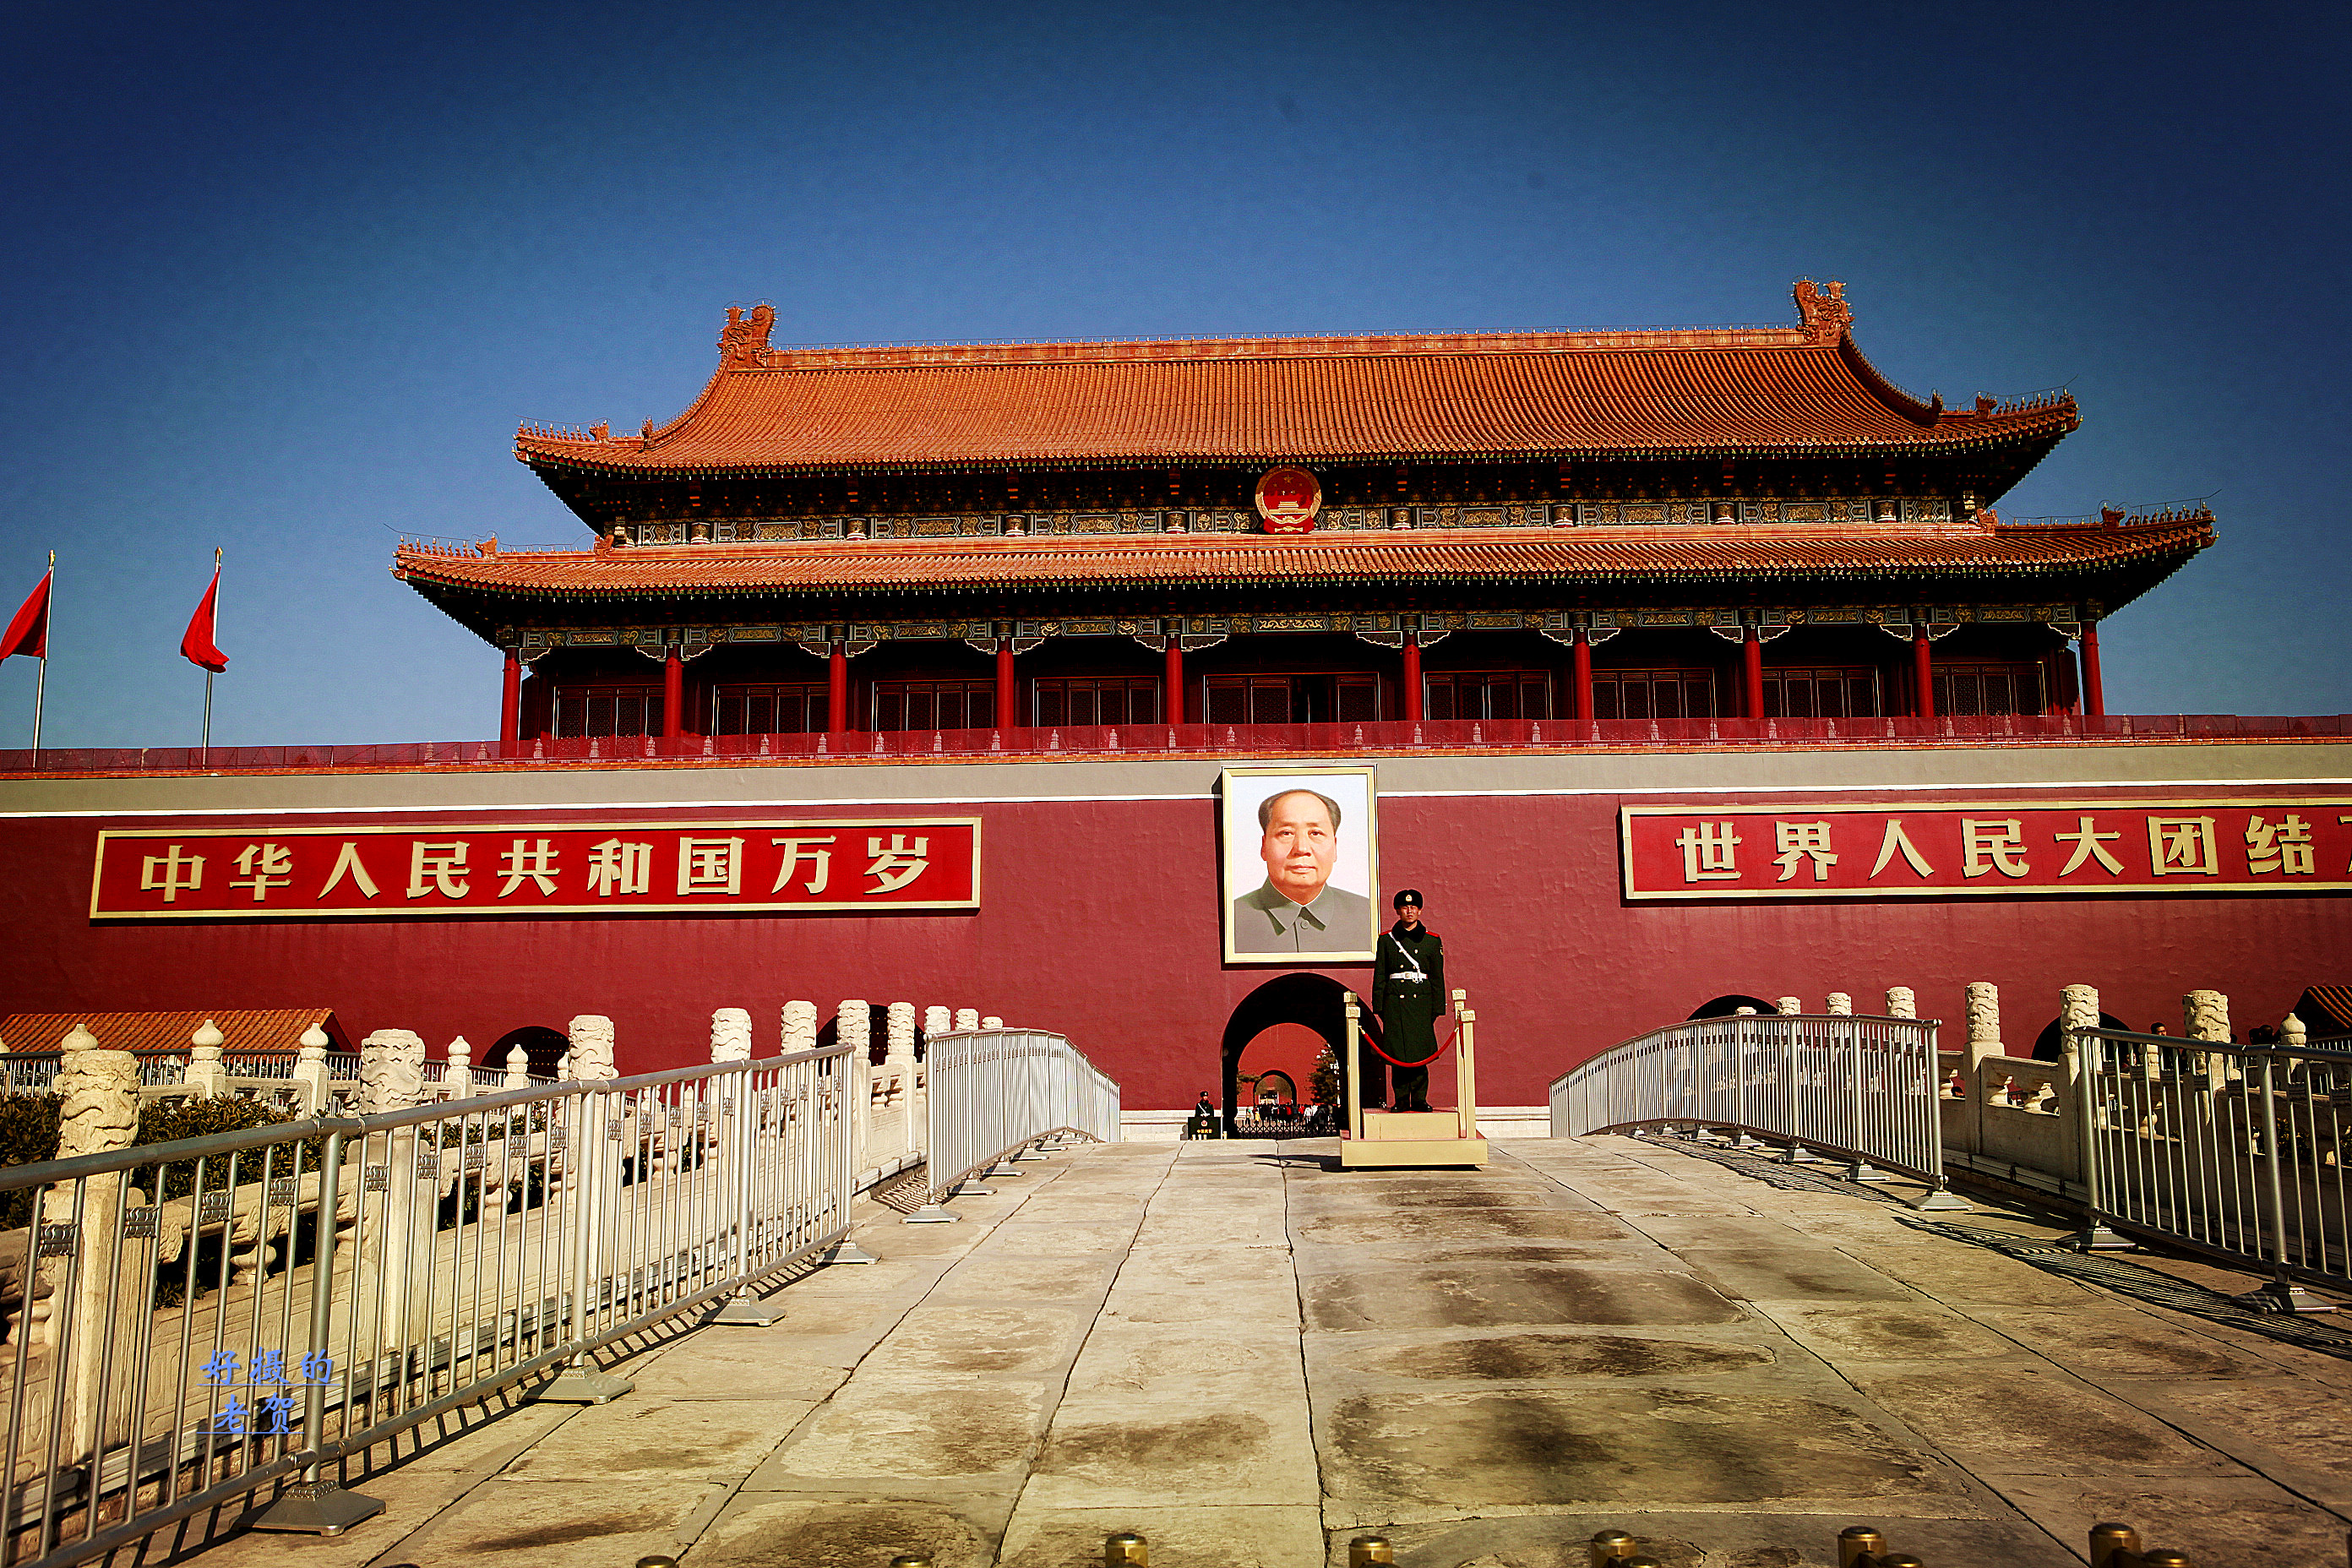 原创天天路过,仔细瞻仰天安门了吗?它,就是北京和中国的地标性建筑